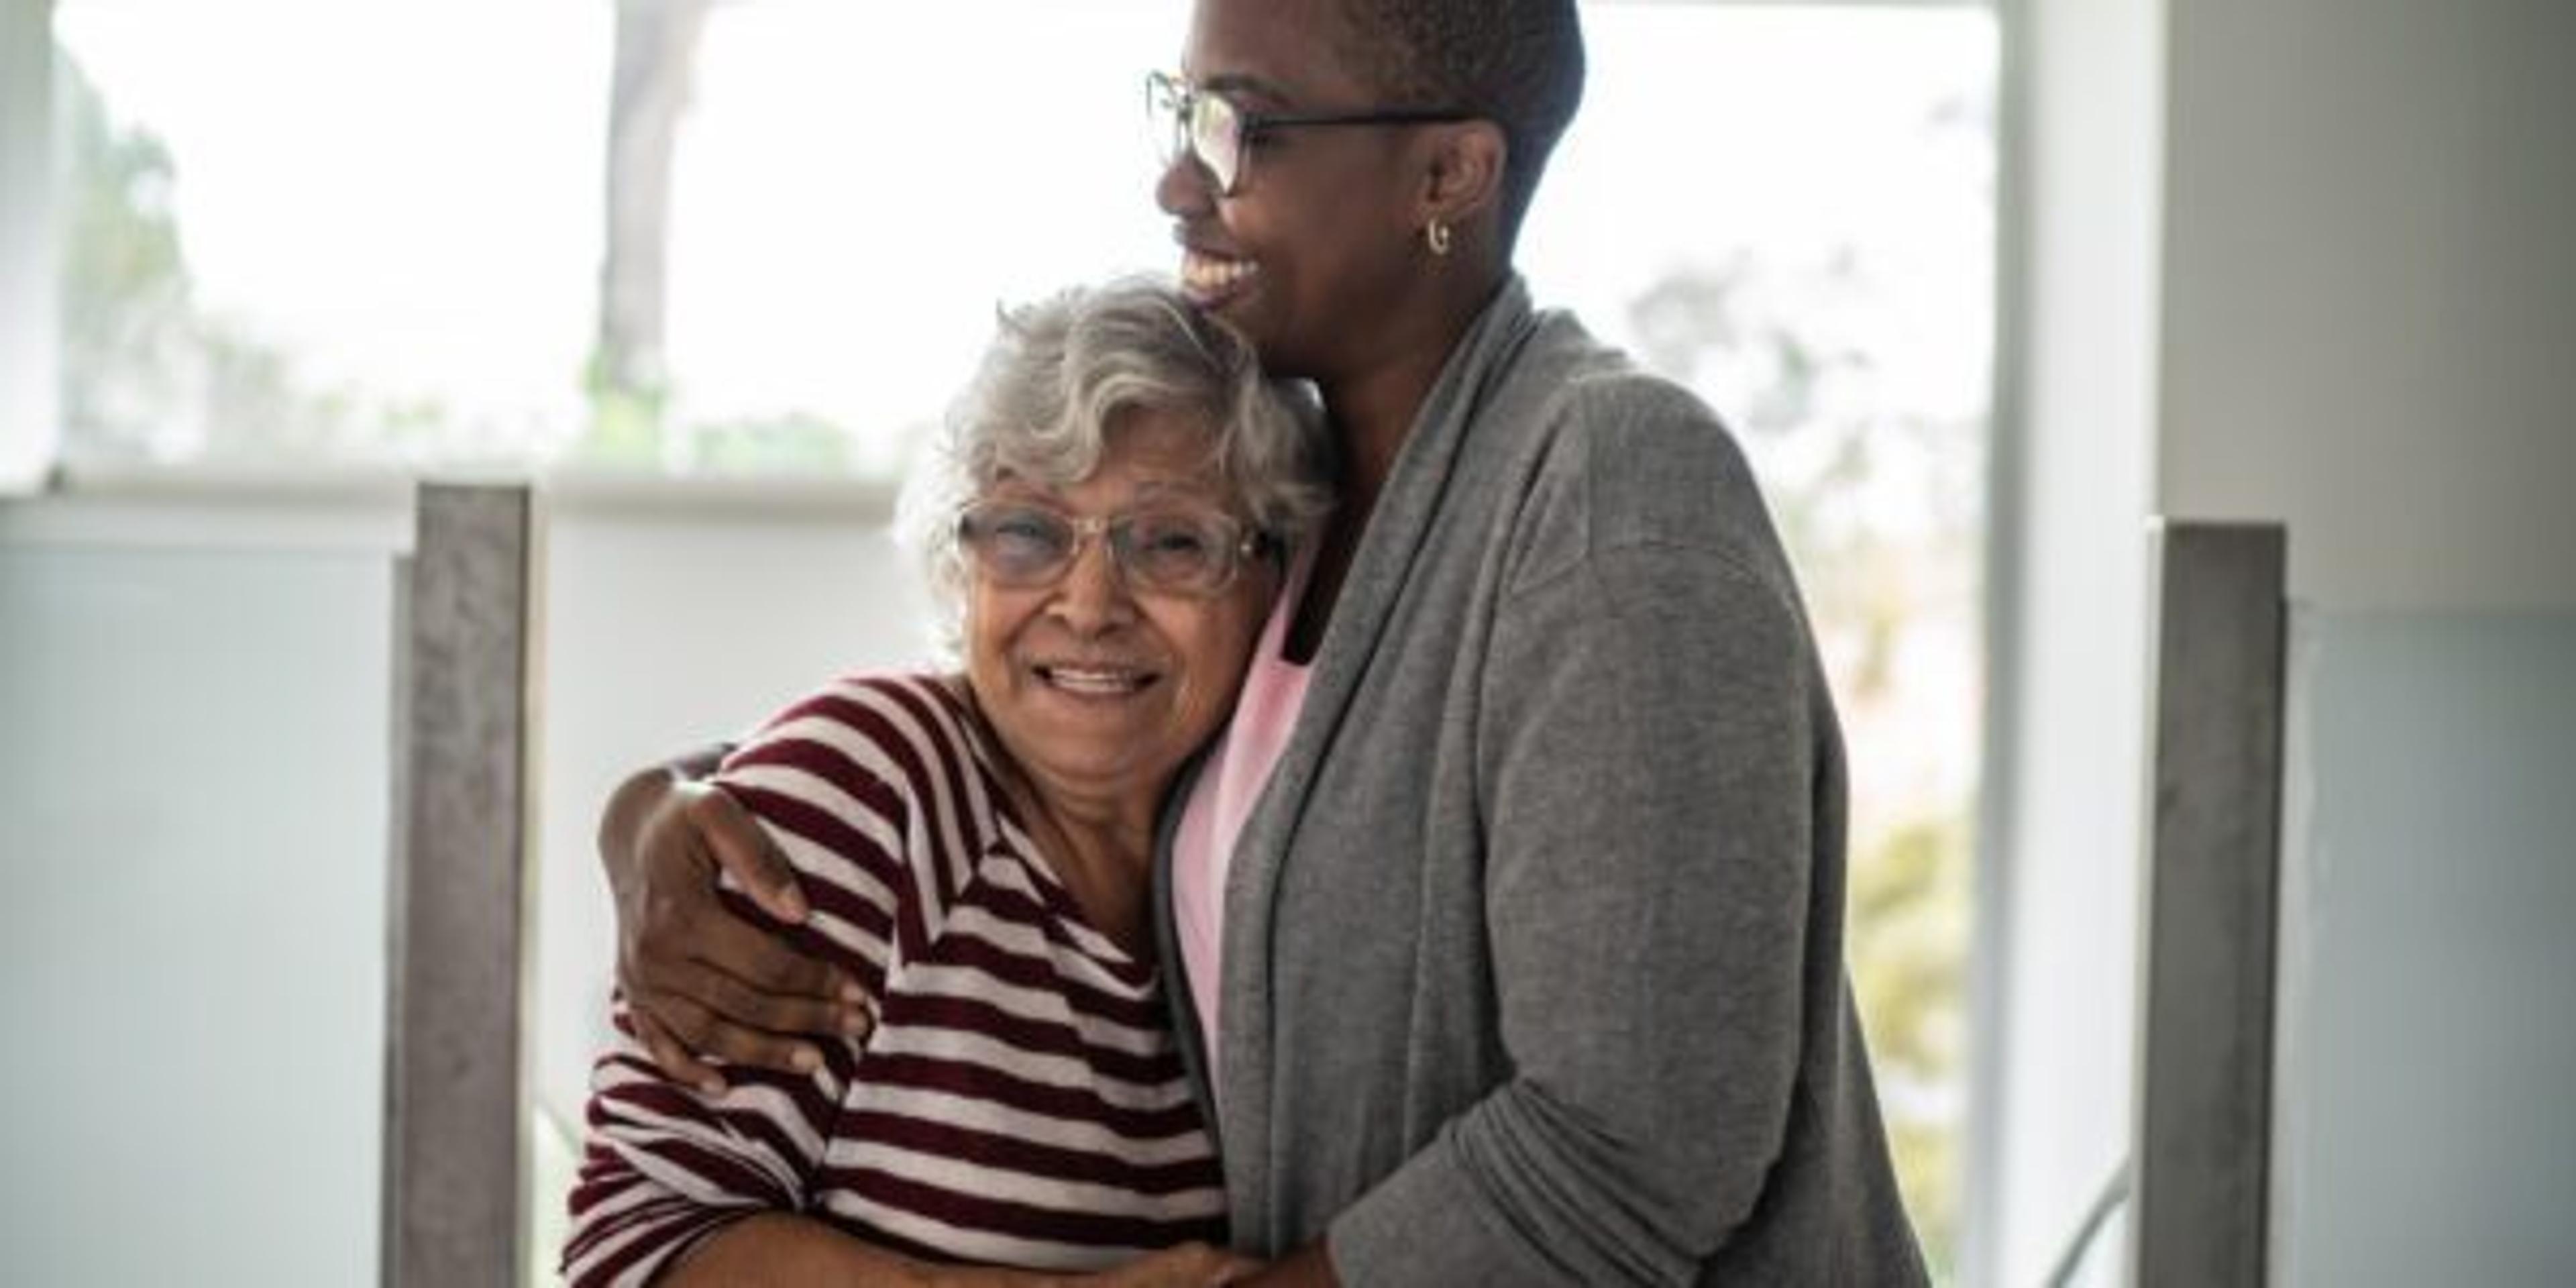 Caregiver hugging older woman